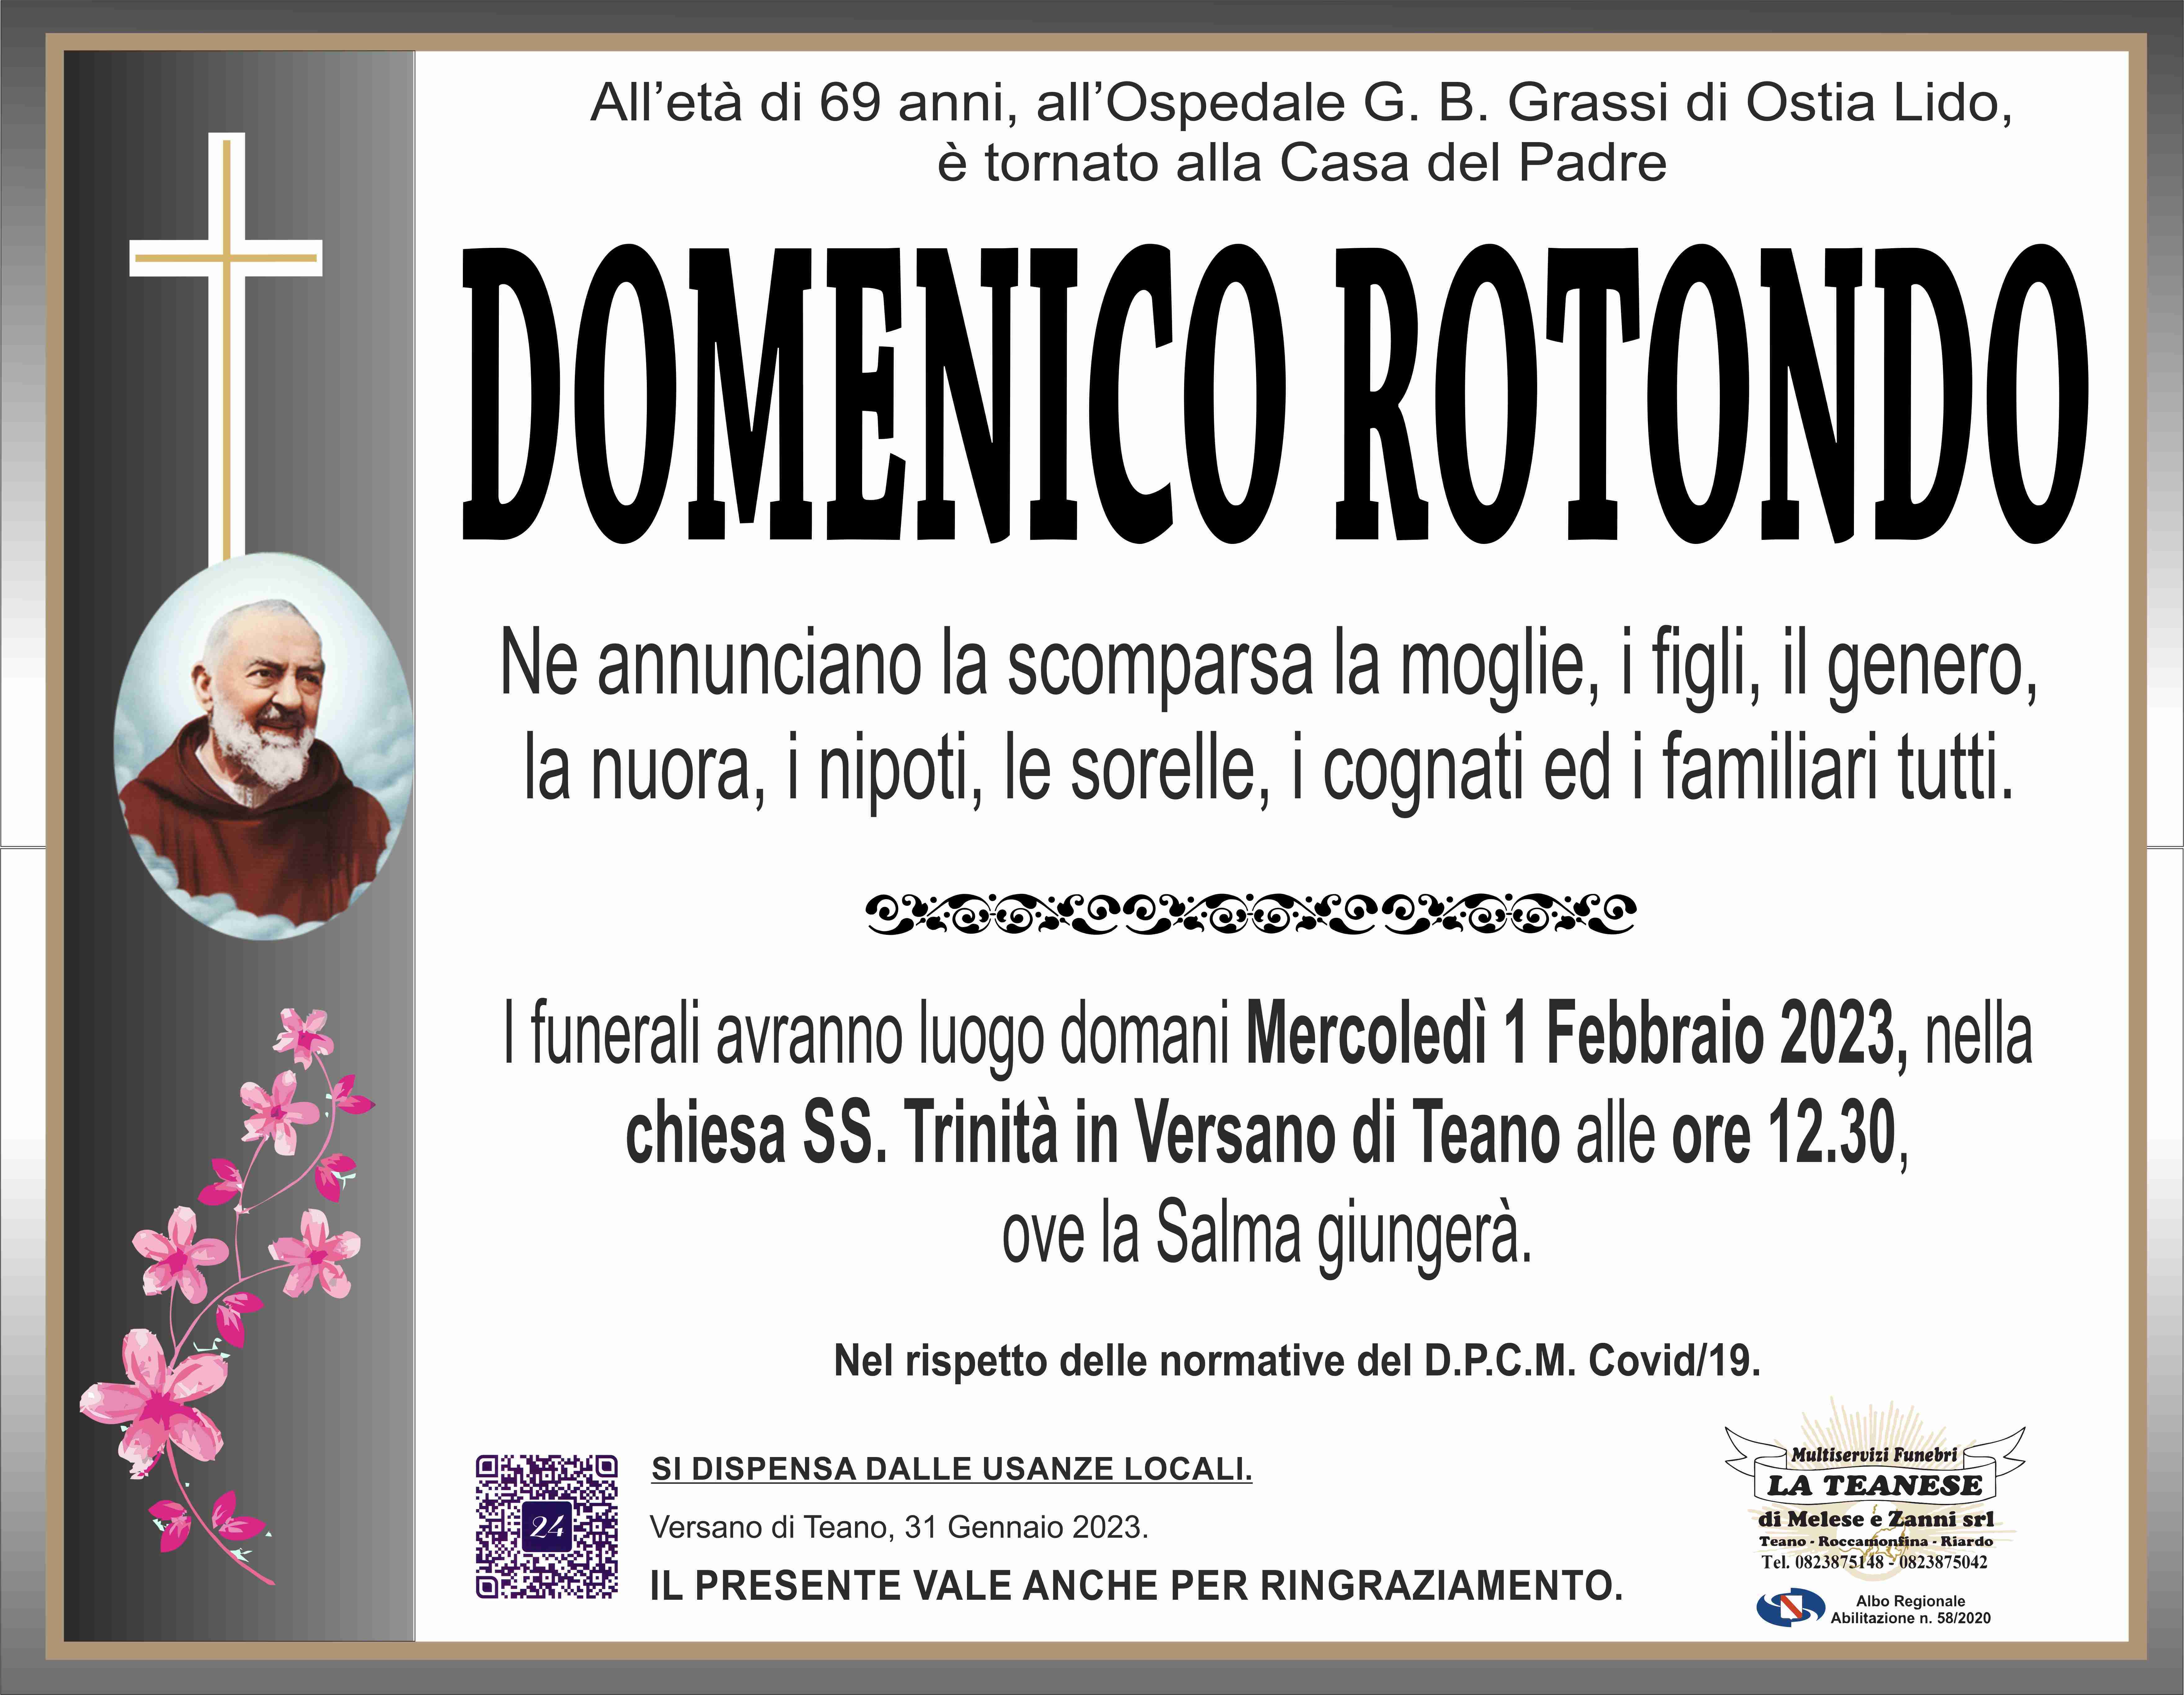 Domenico Rotondo